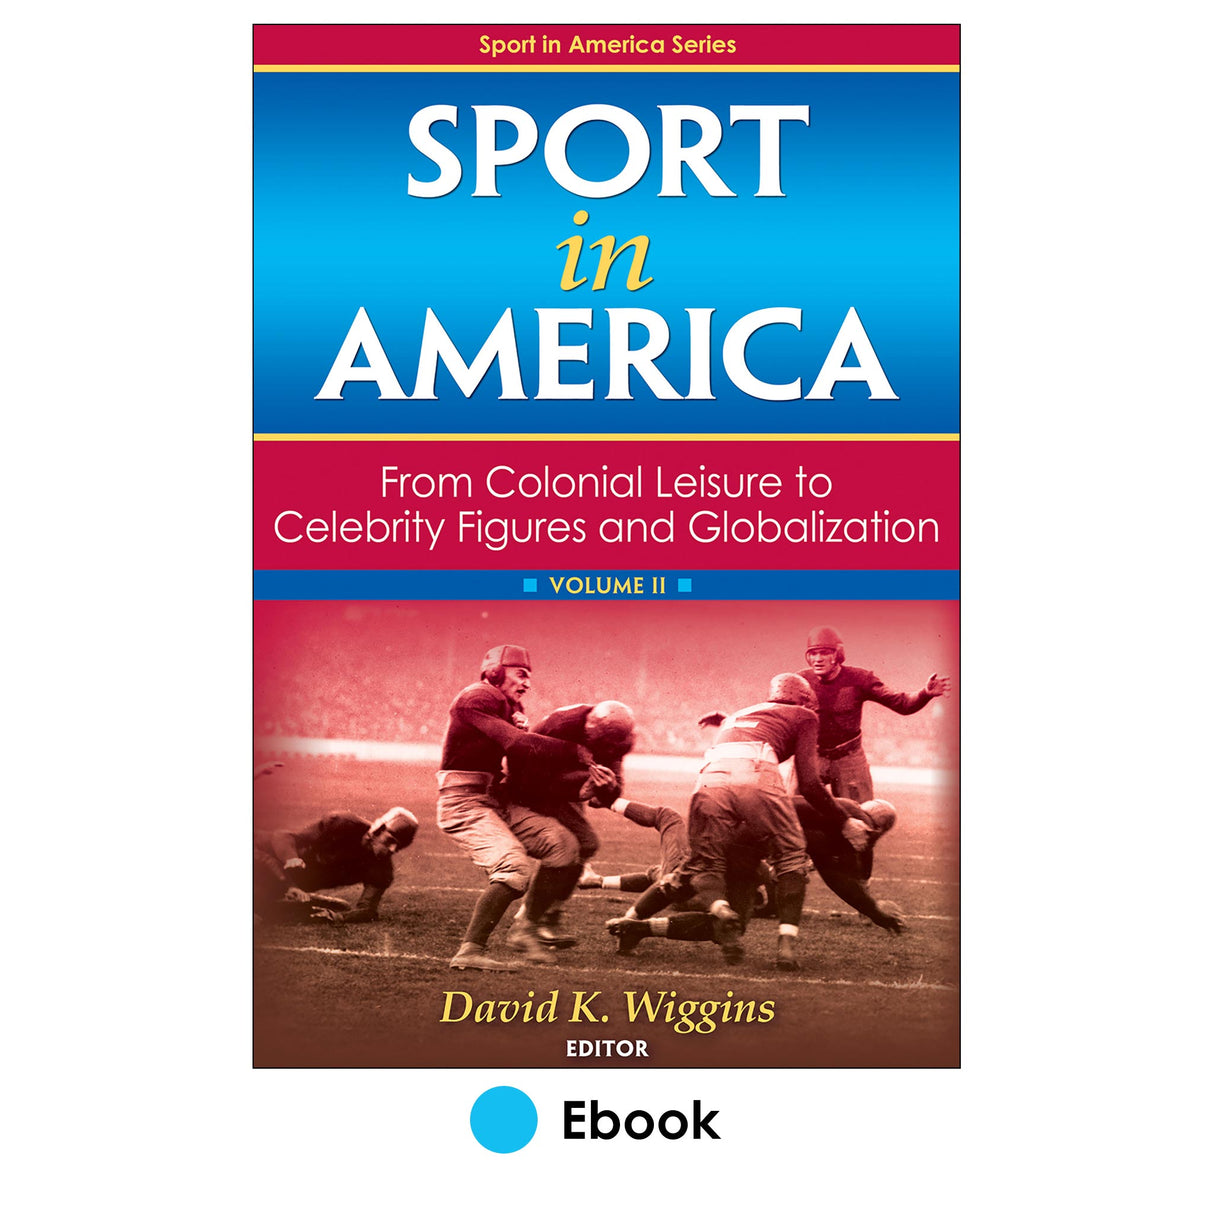 Sport in America, Volume II PDF